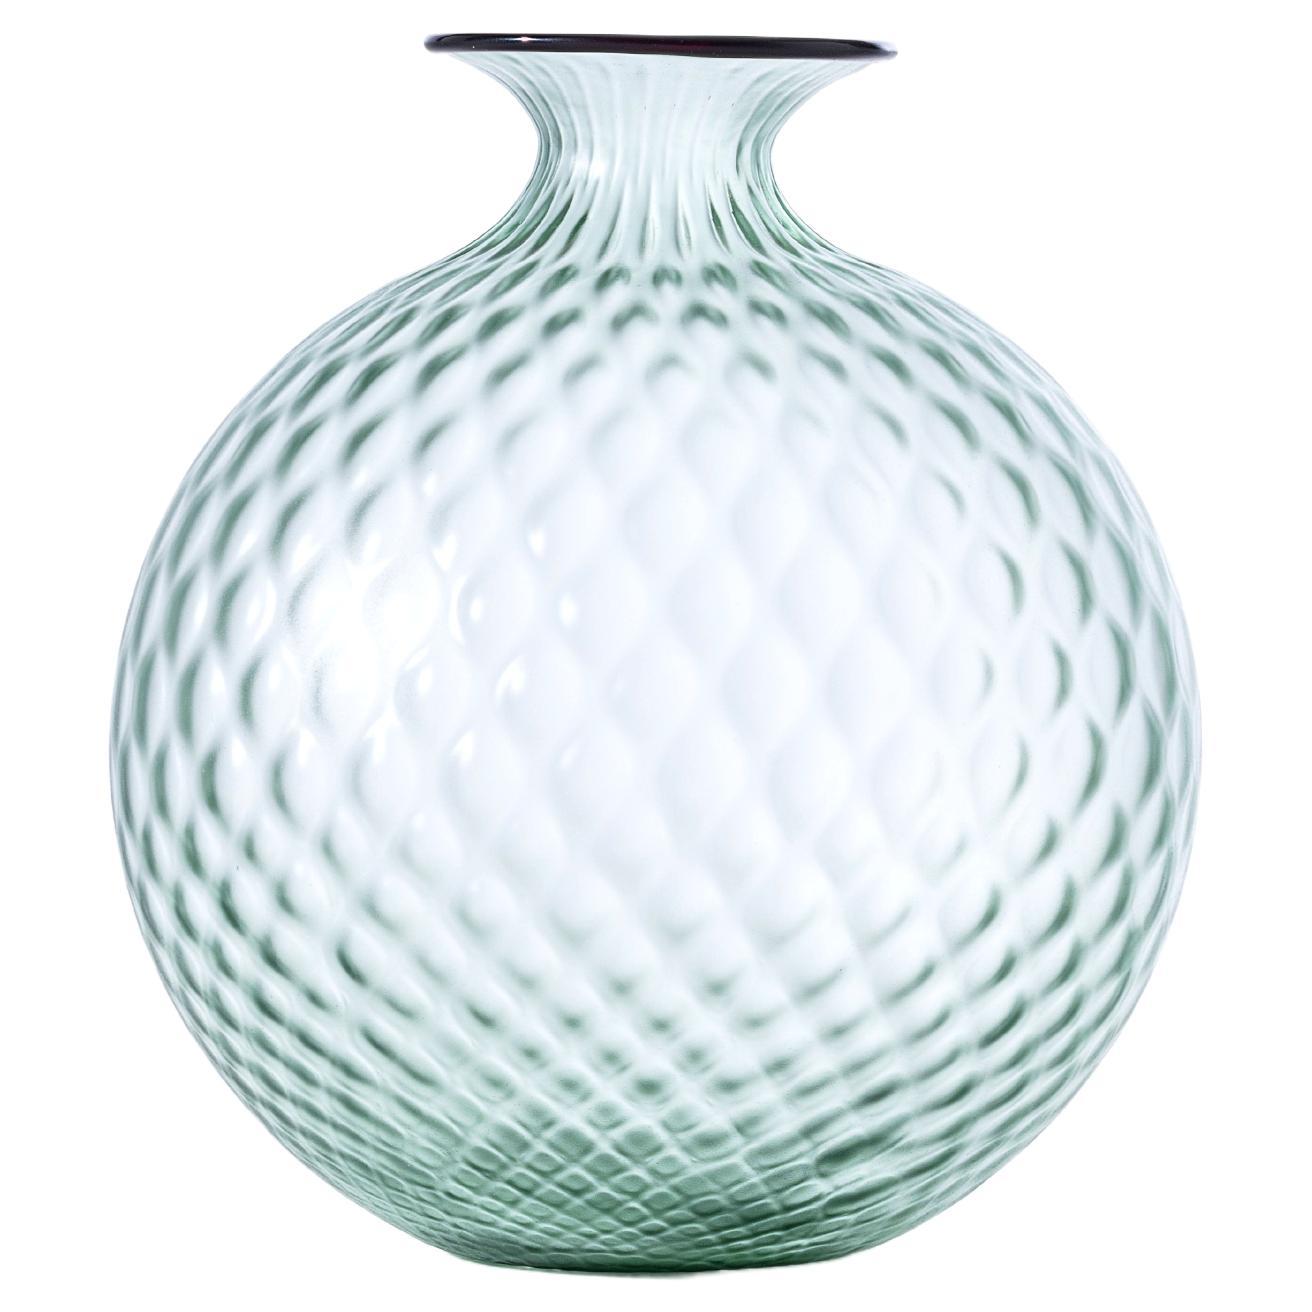 Monofiore Balaton Sabbiato Glass Vase in Rio Green Ox Blood Thread by Venini For Sale